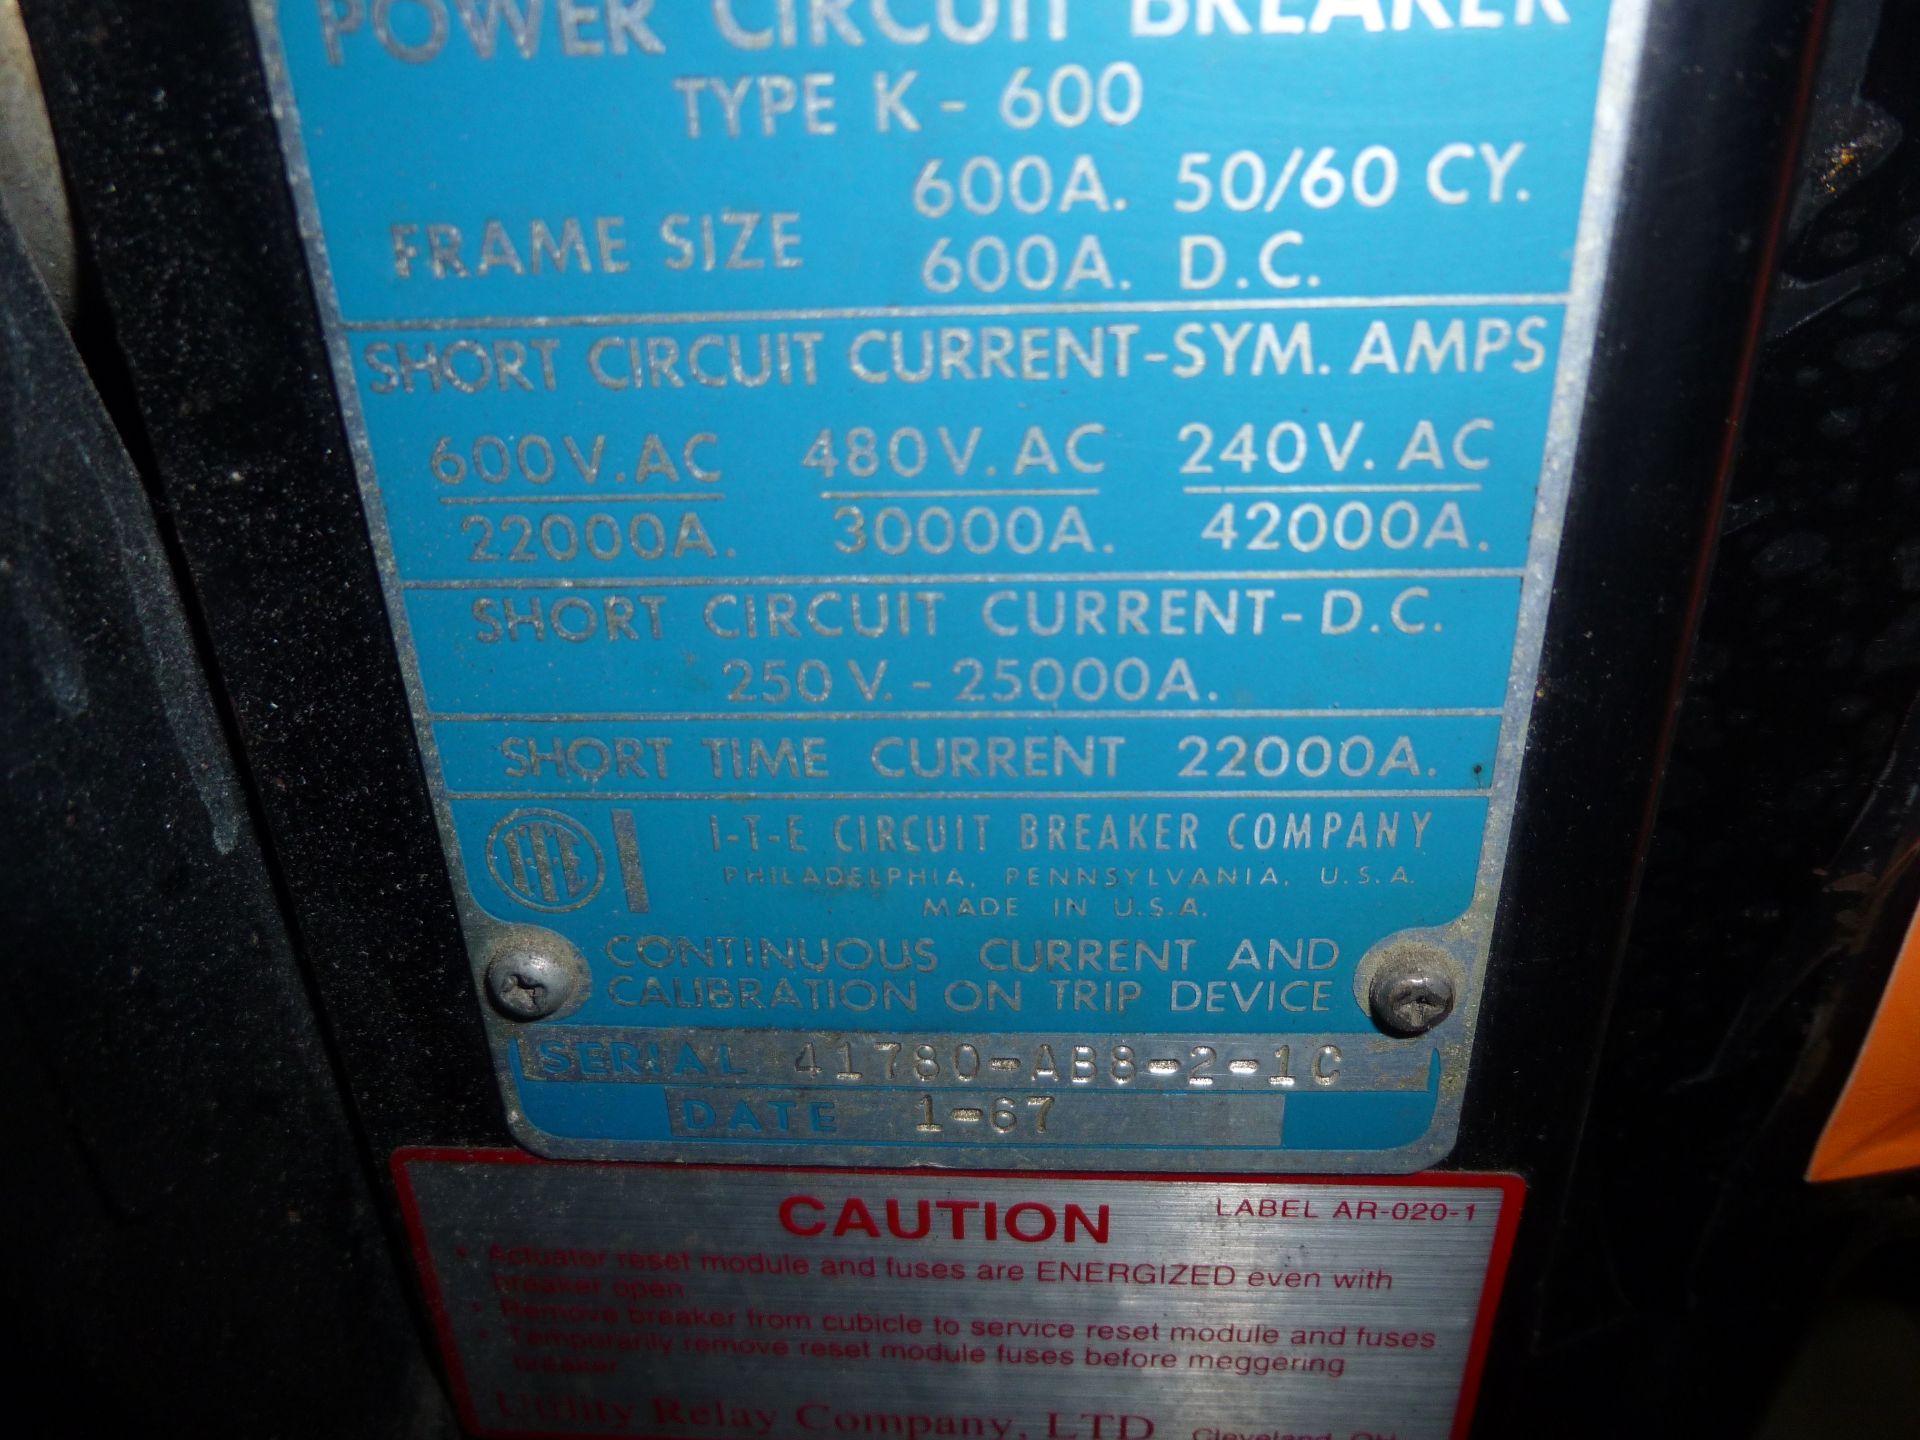 ITE model type K-600 power circuit breaker frame size 600amp, 600v max - Image 4 of 4